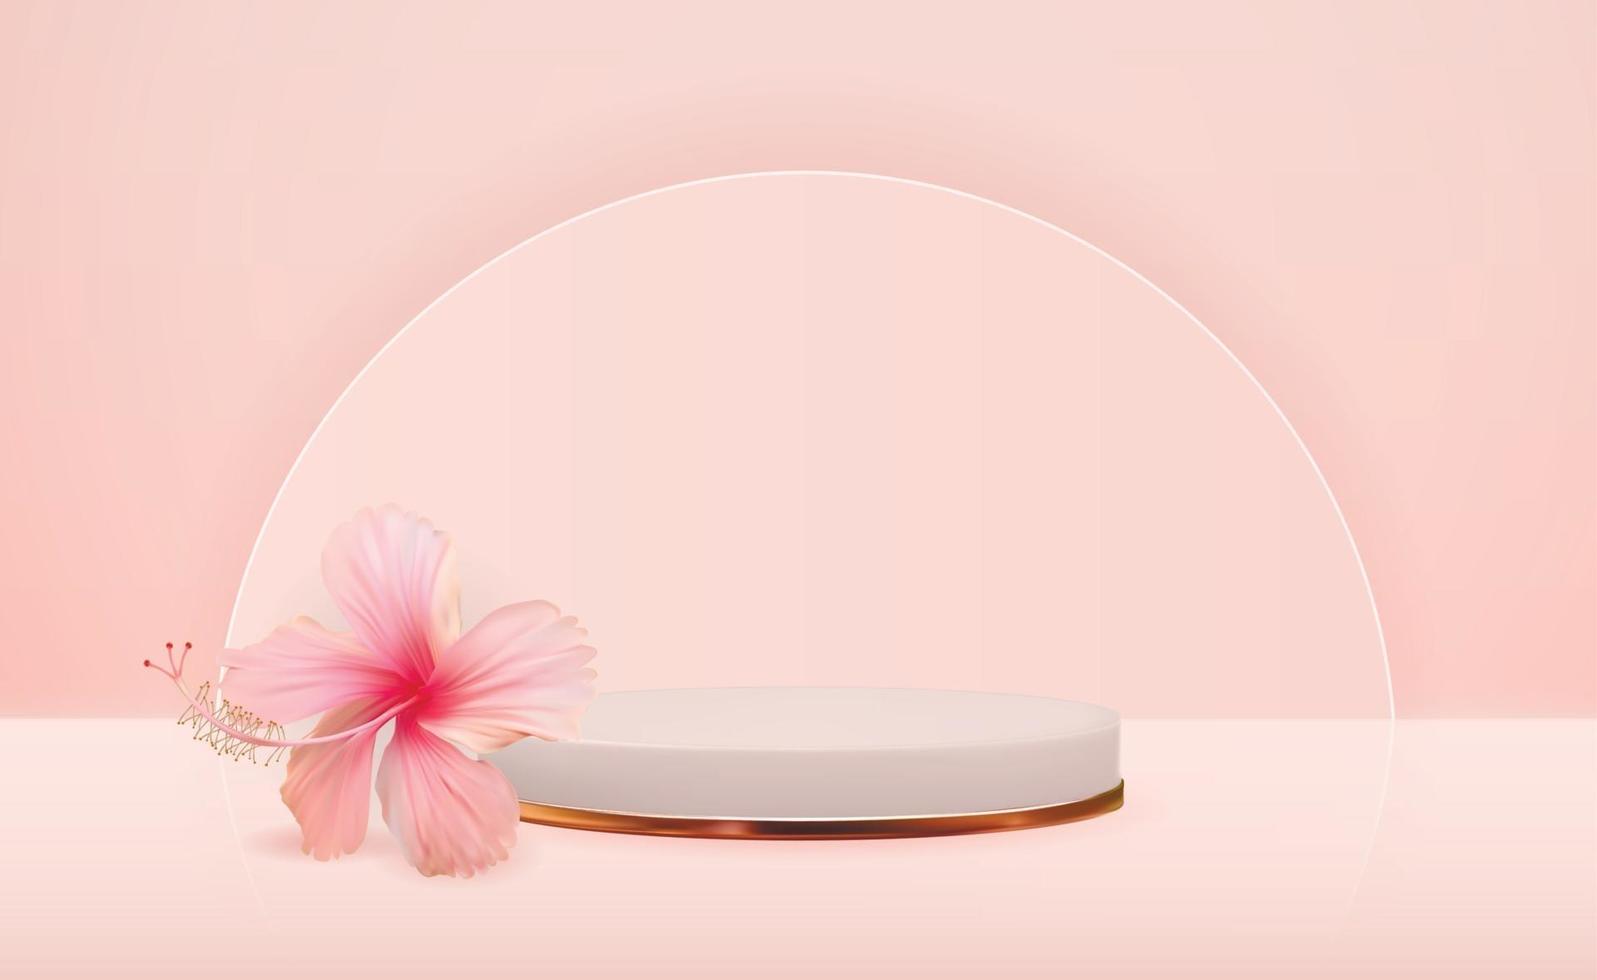 Fondo de pedestal 3d blanco con flor de hibisco para presentación de productos cosméticos, revista de moda. copia espacio ilustración vectorial vector